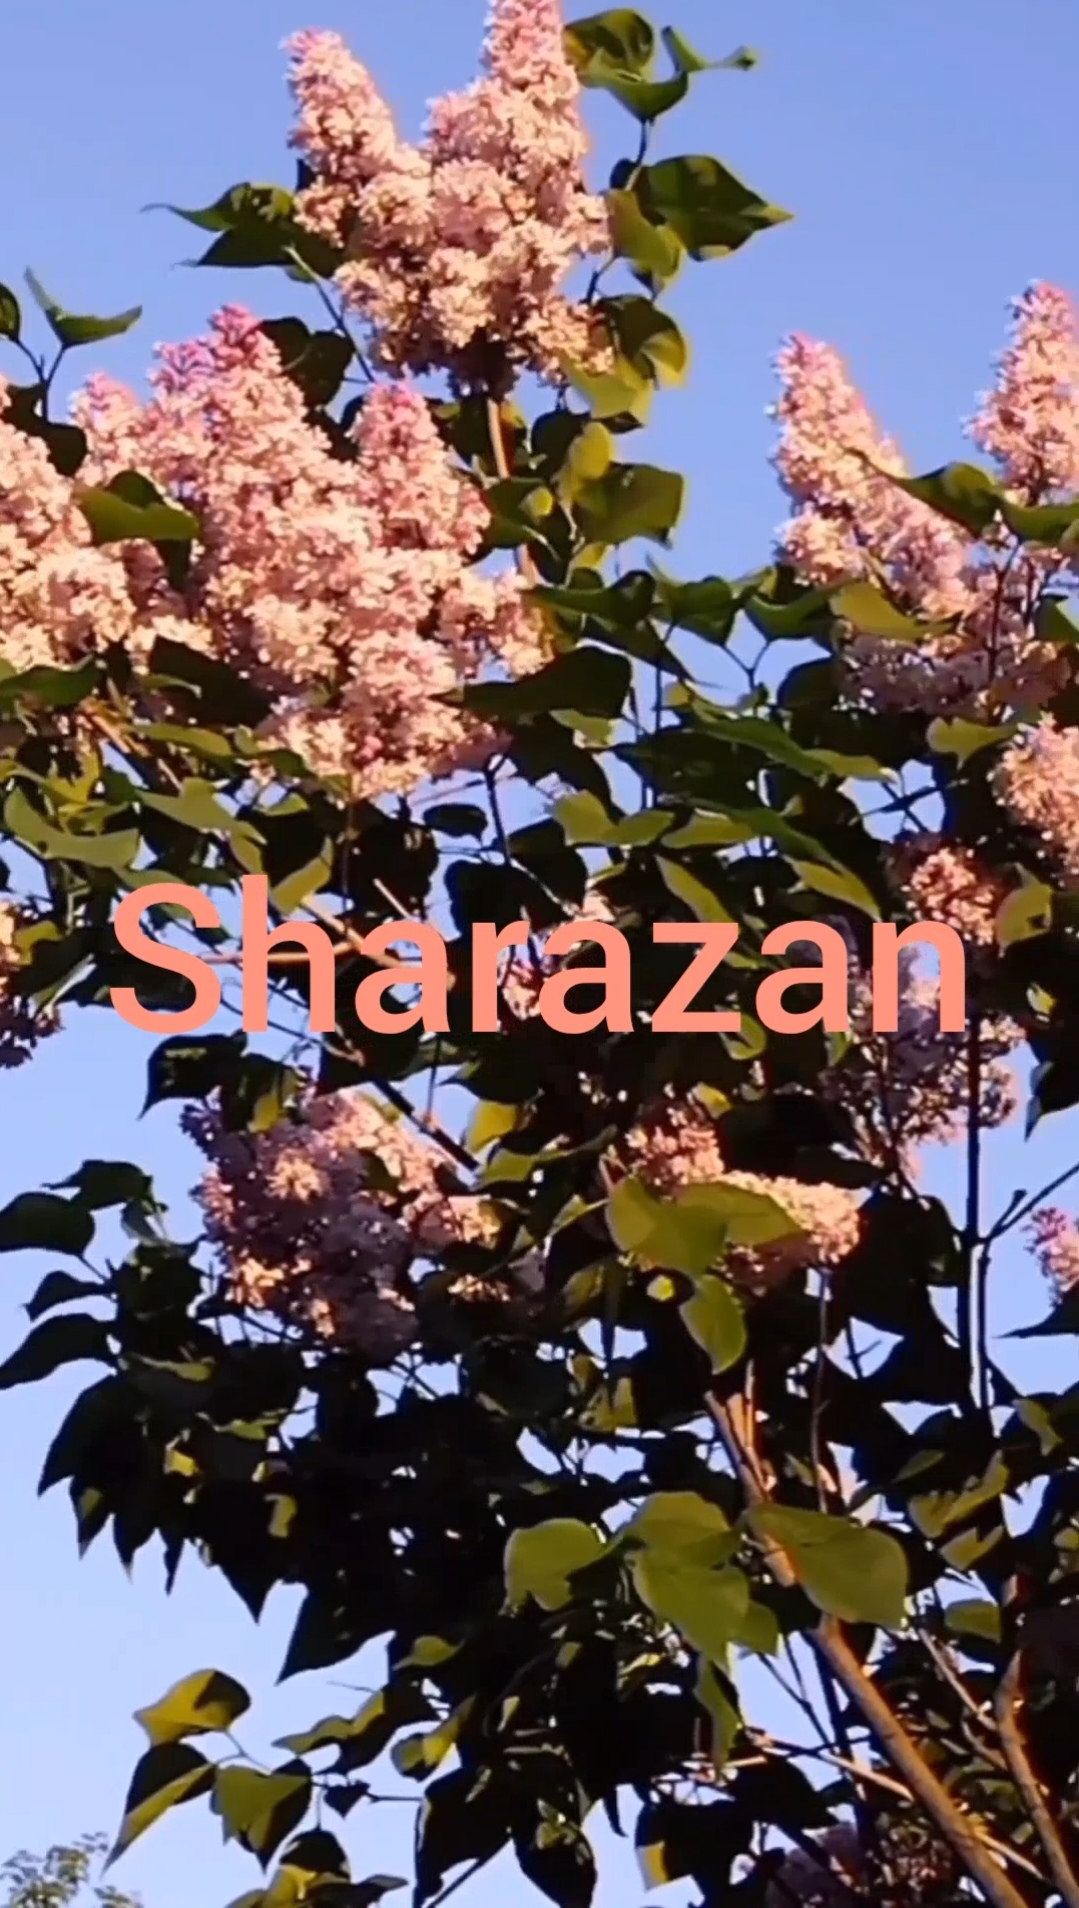 "Sharazan" песня о прекрасной стране, где никогда не заканчивается  лето и хочется летать.